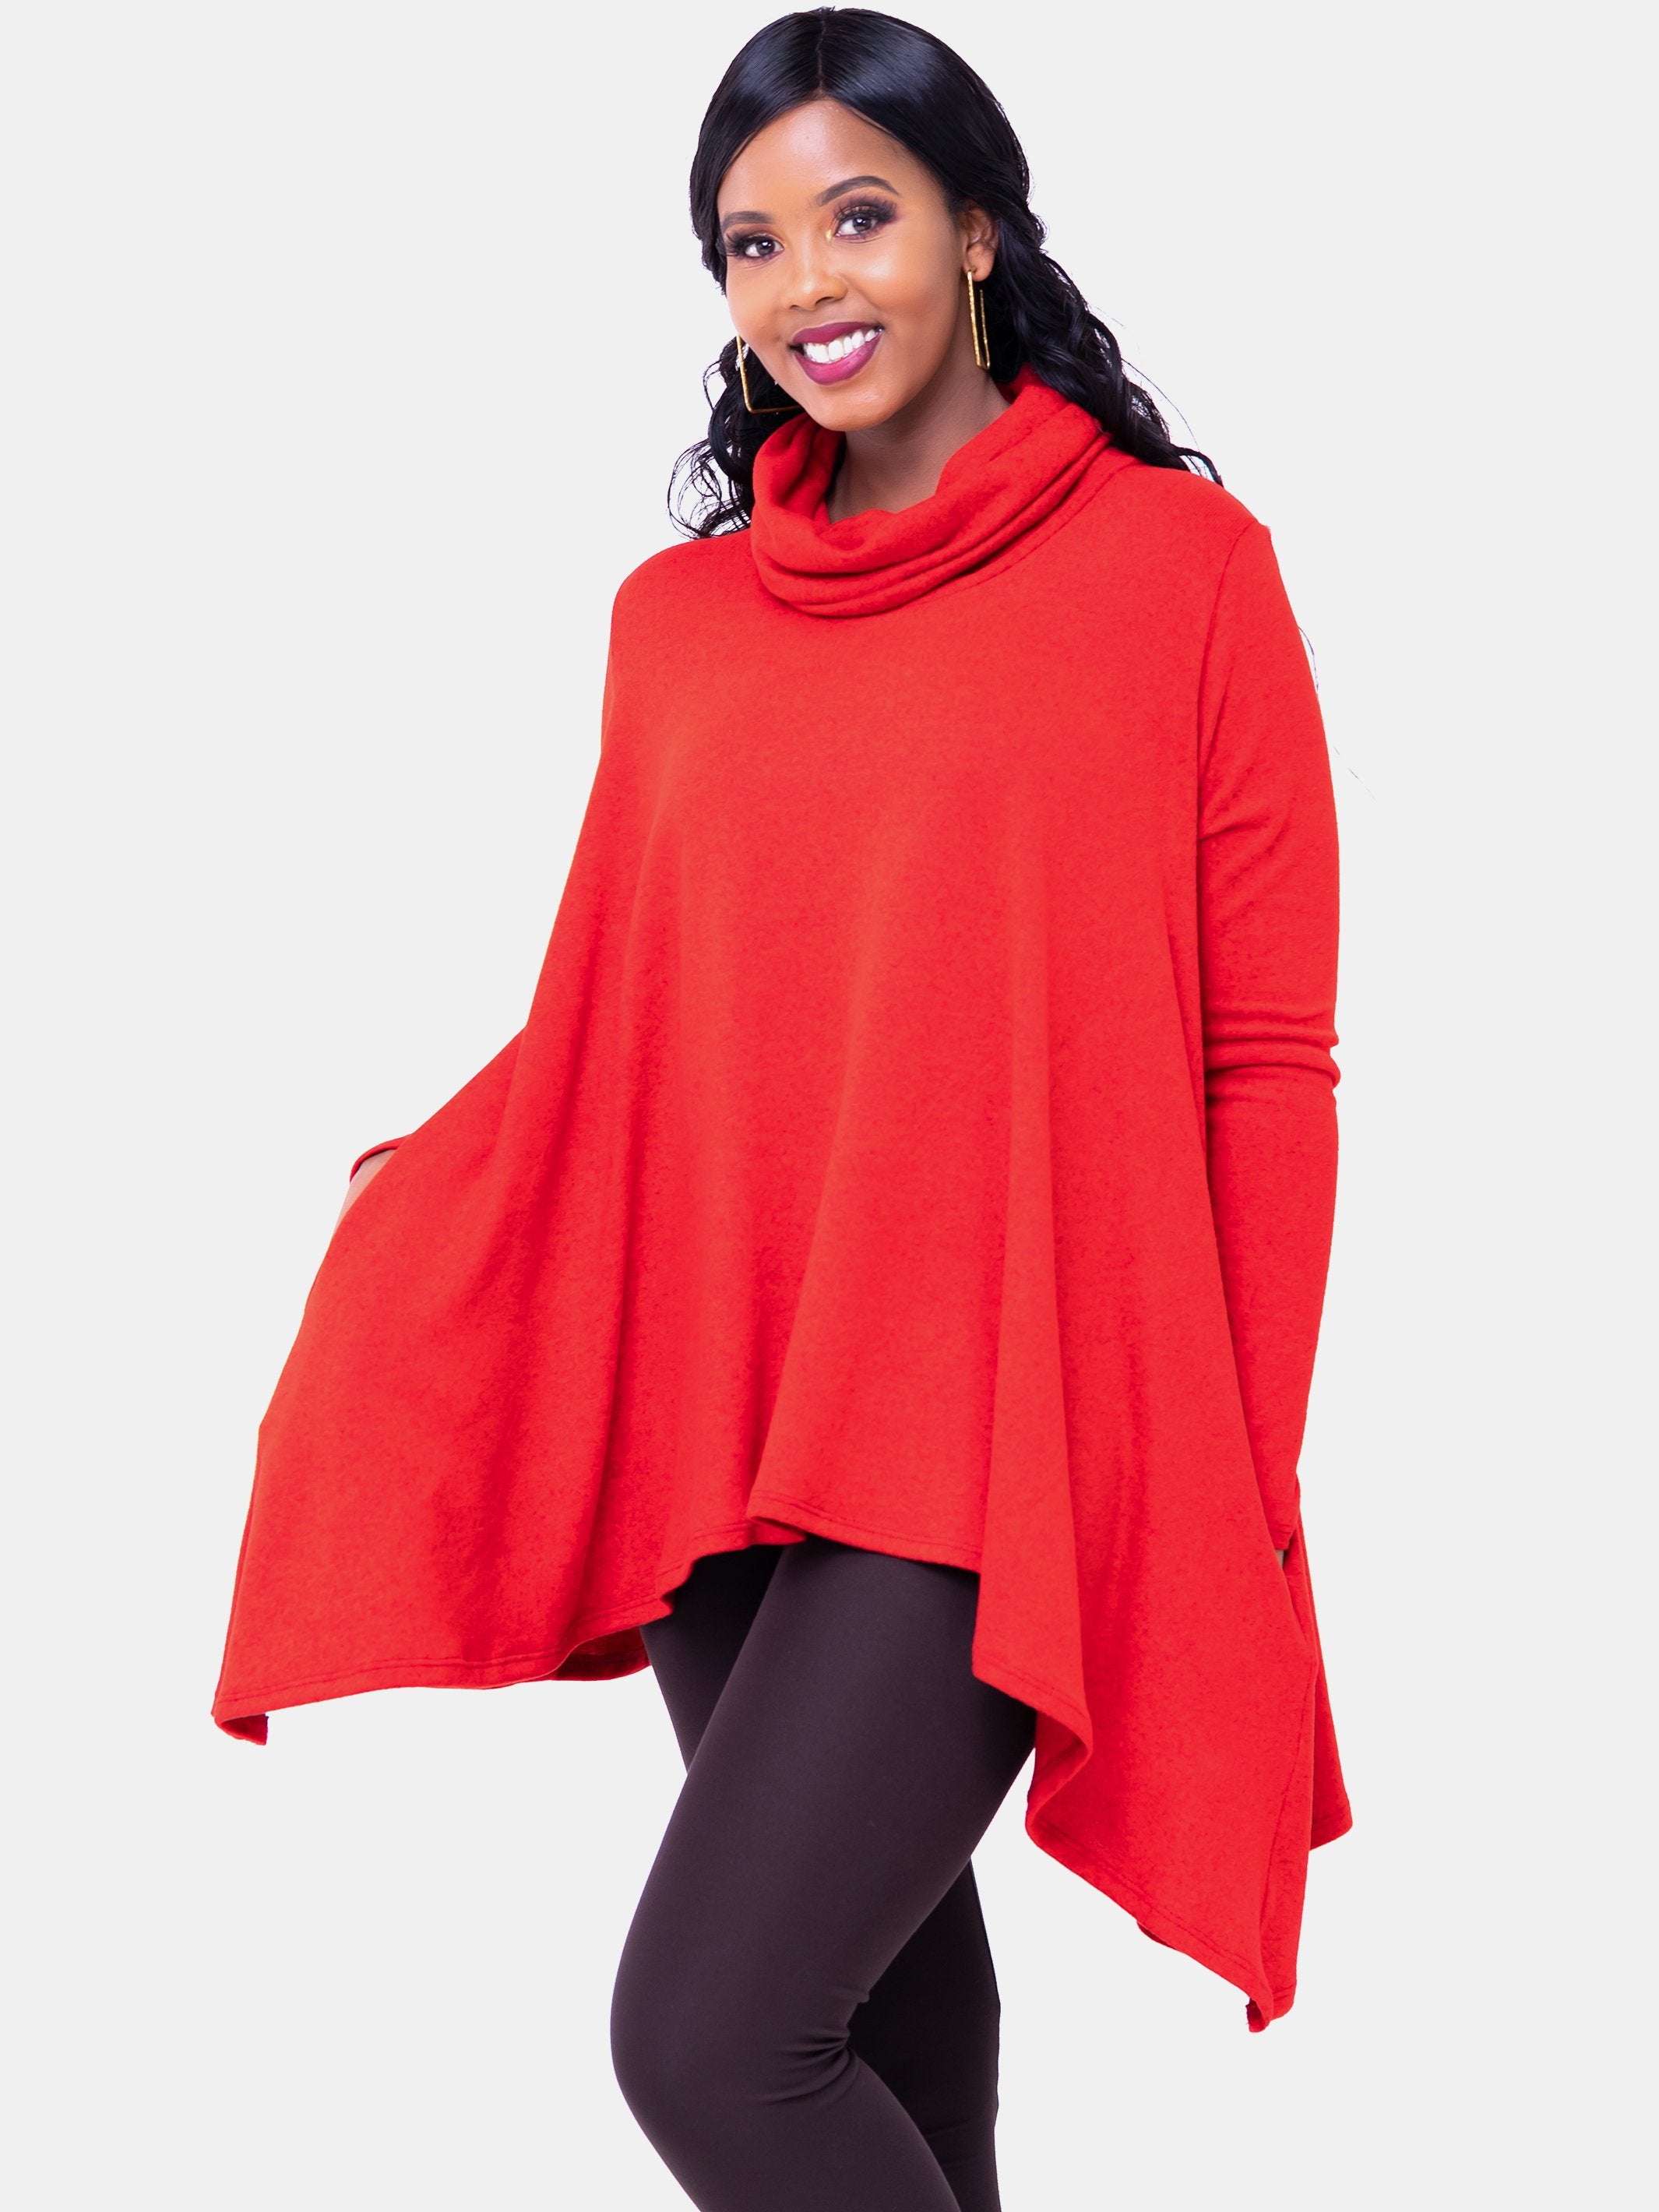 Vivo Imelda Cowl Sweater - Red - Shop Zetu